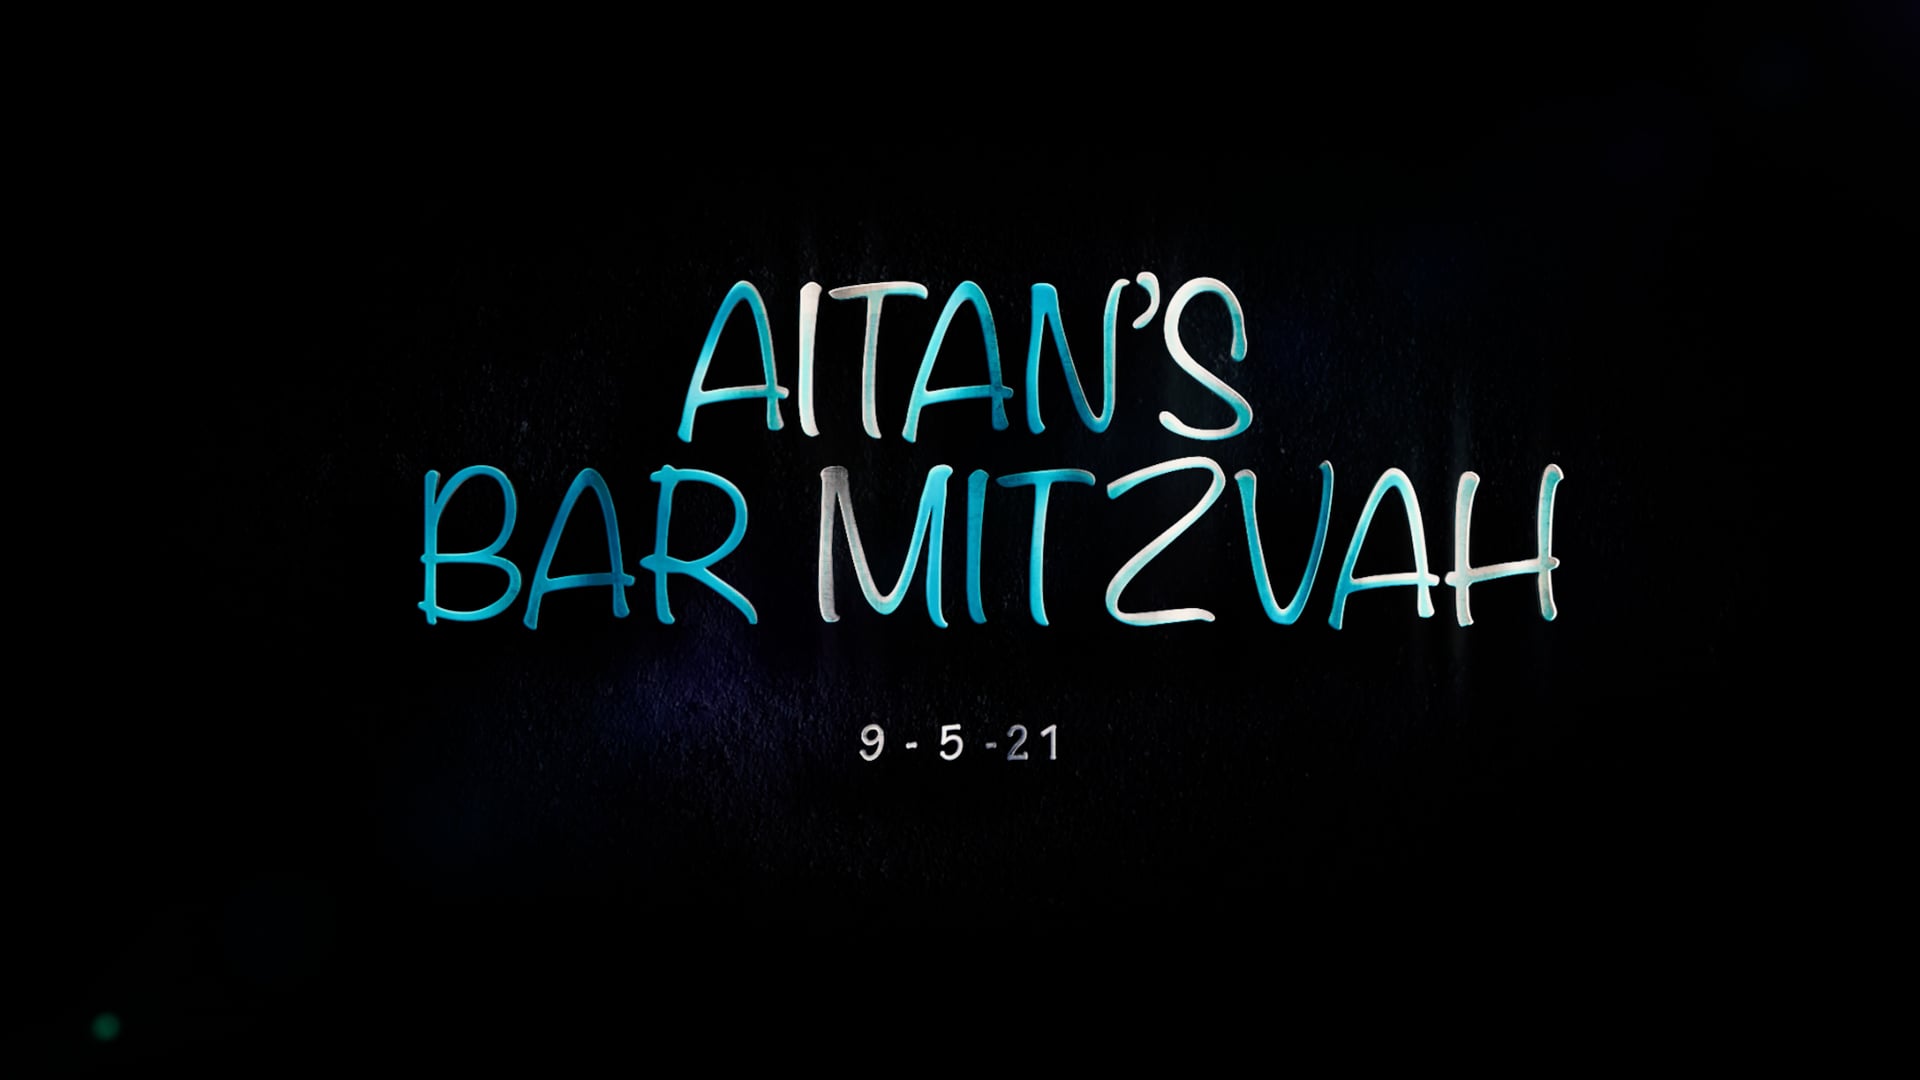 Aitan's Bar Mitzvah Video!